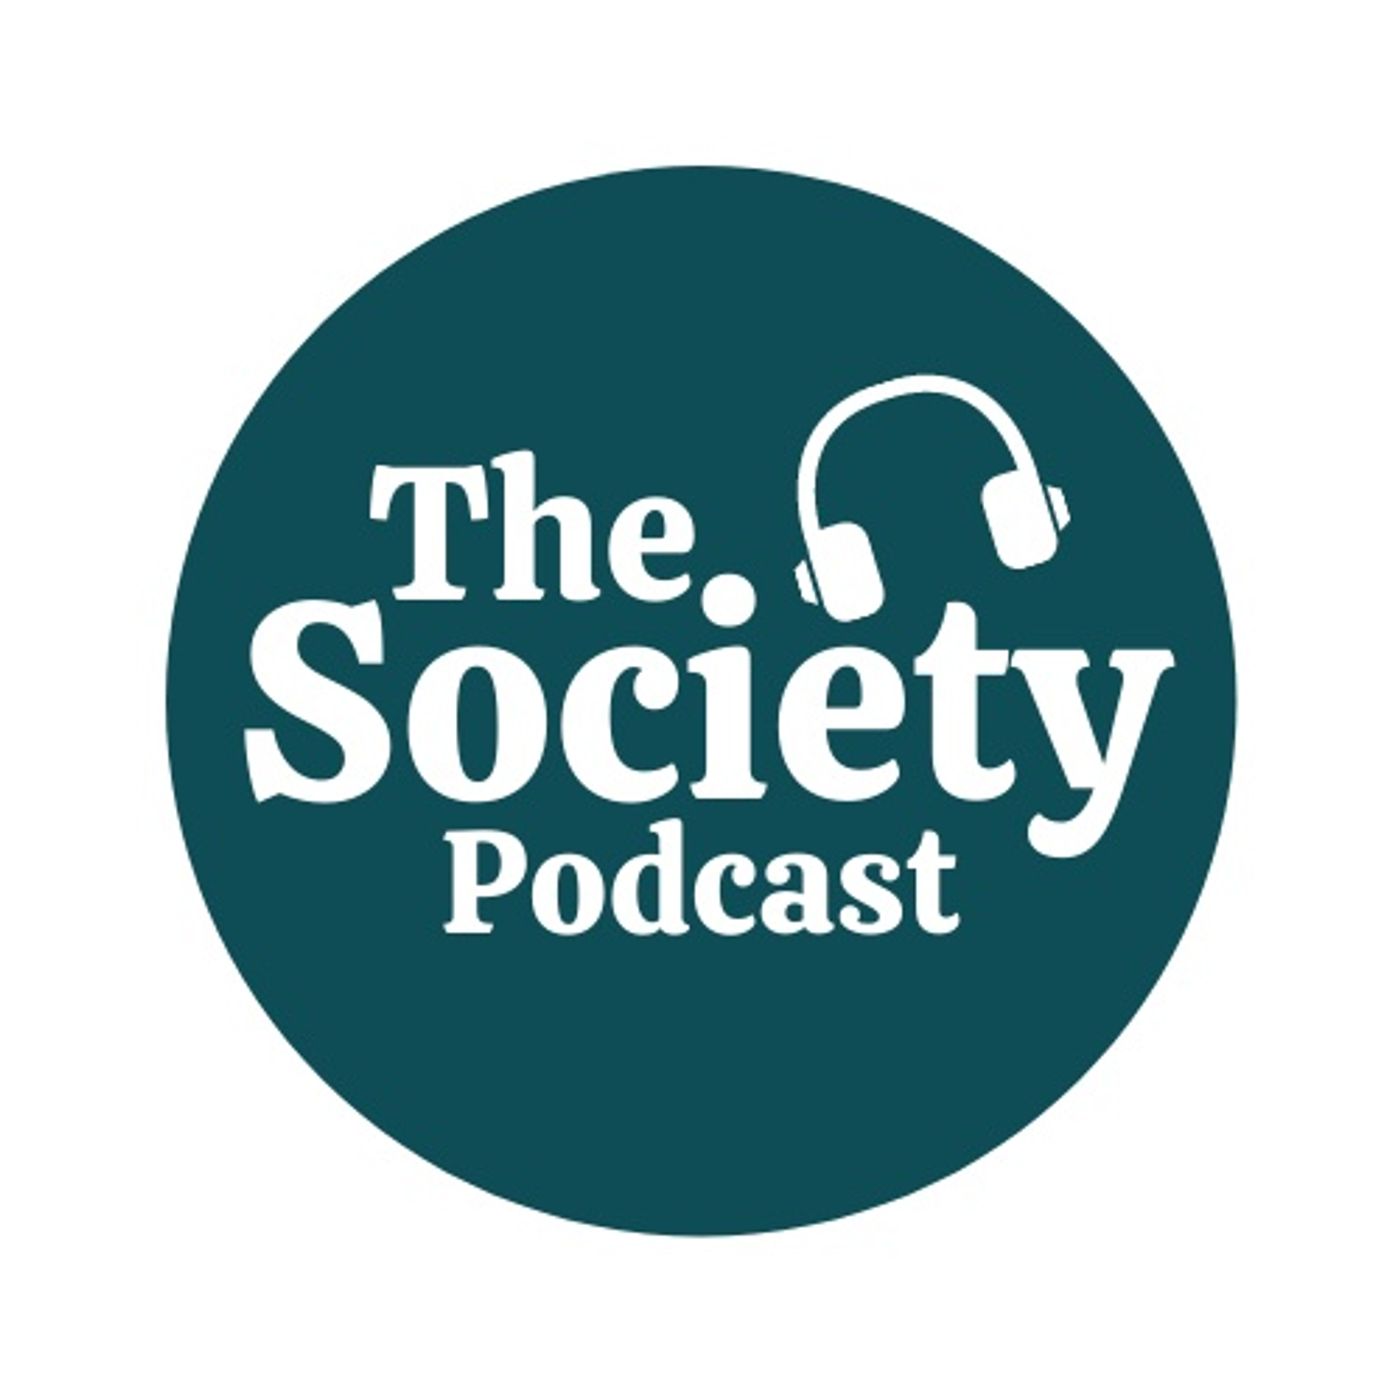 The Society El Podcast